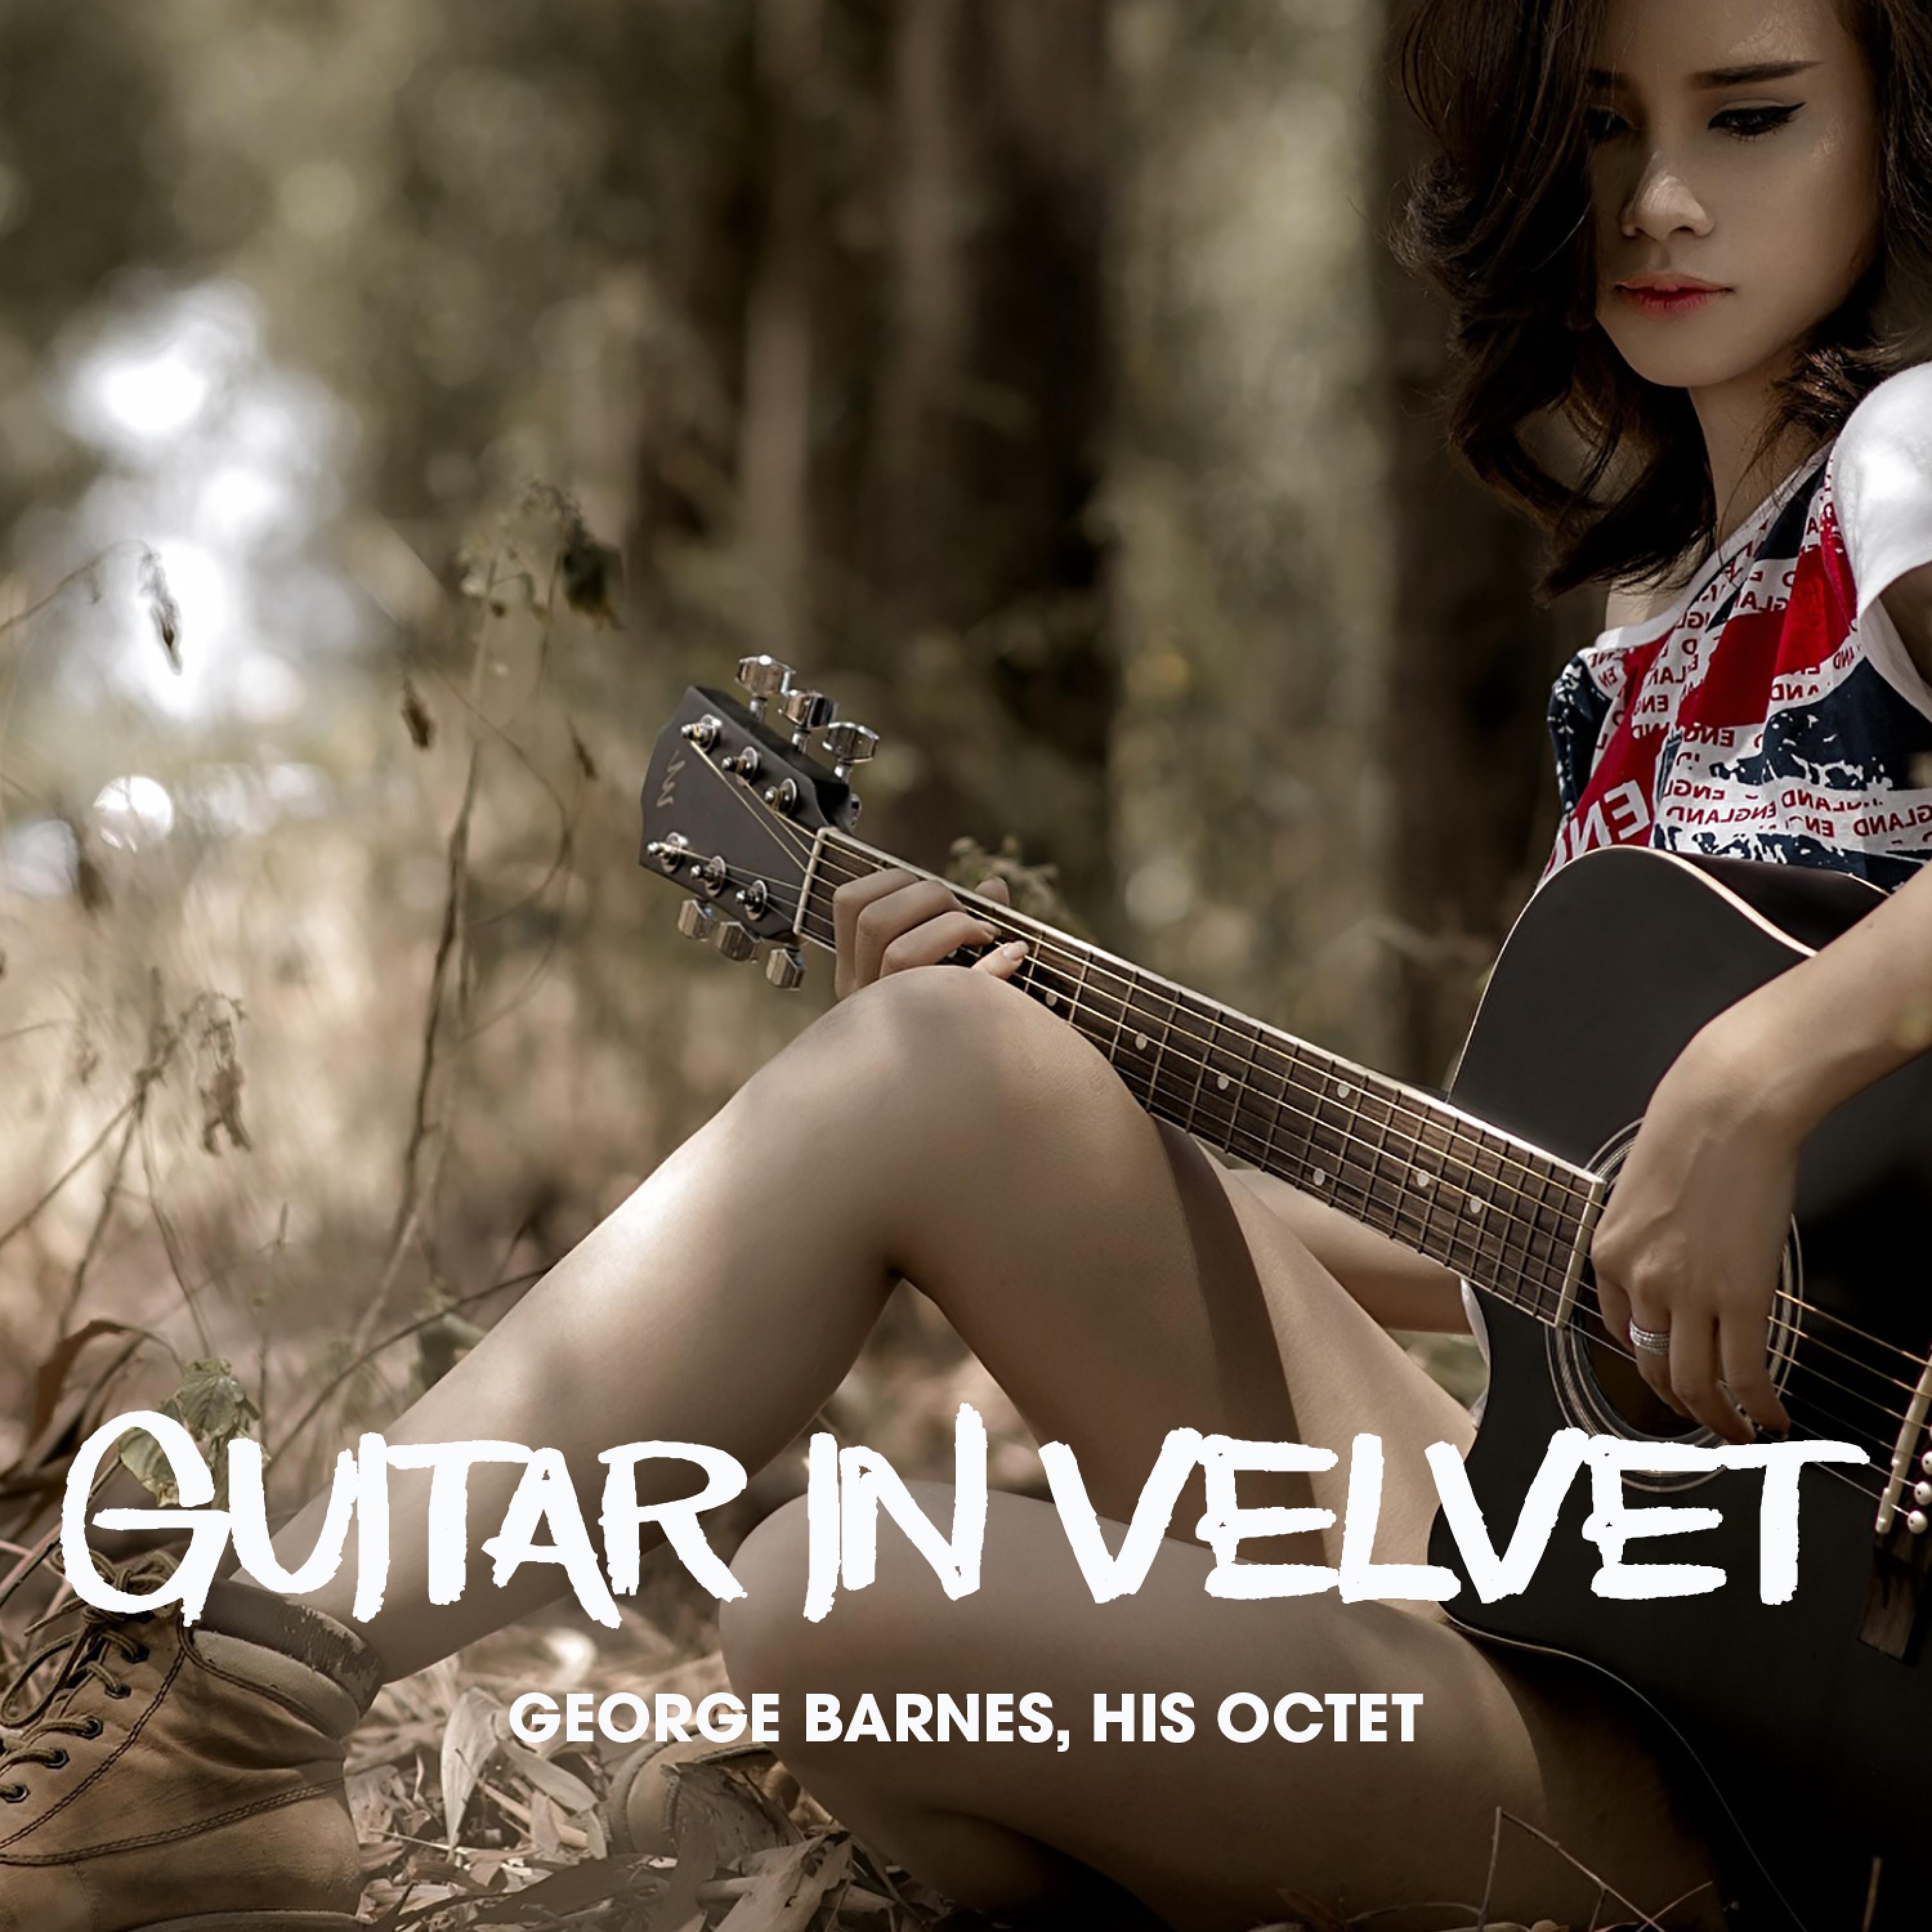 Guitar in Velvet